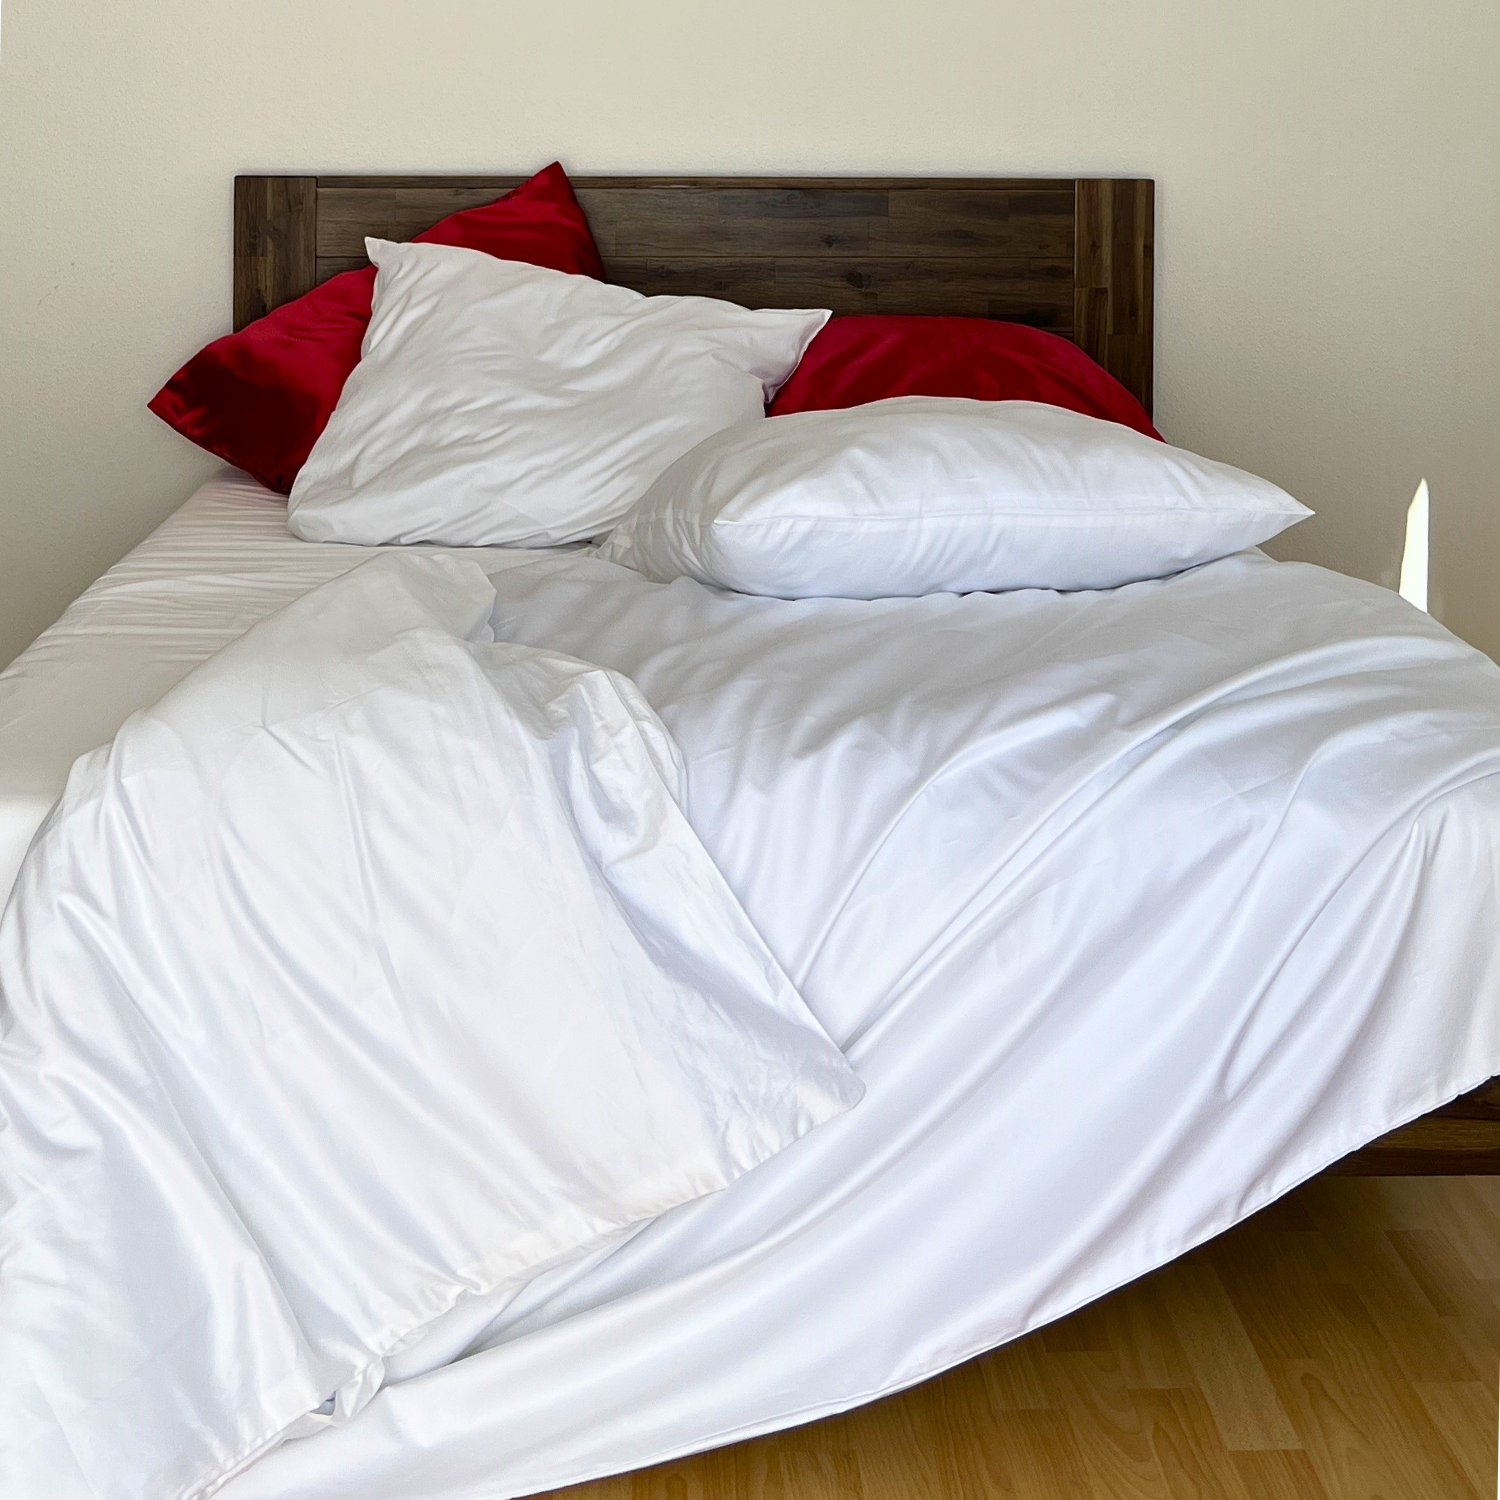 Weißes Bett mit roten Kissen und einem weißen, handgefertigten Bettbezug aus ägyptischer Baumwolle